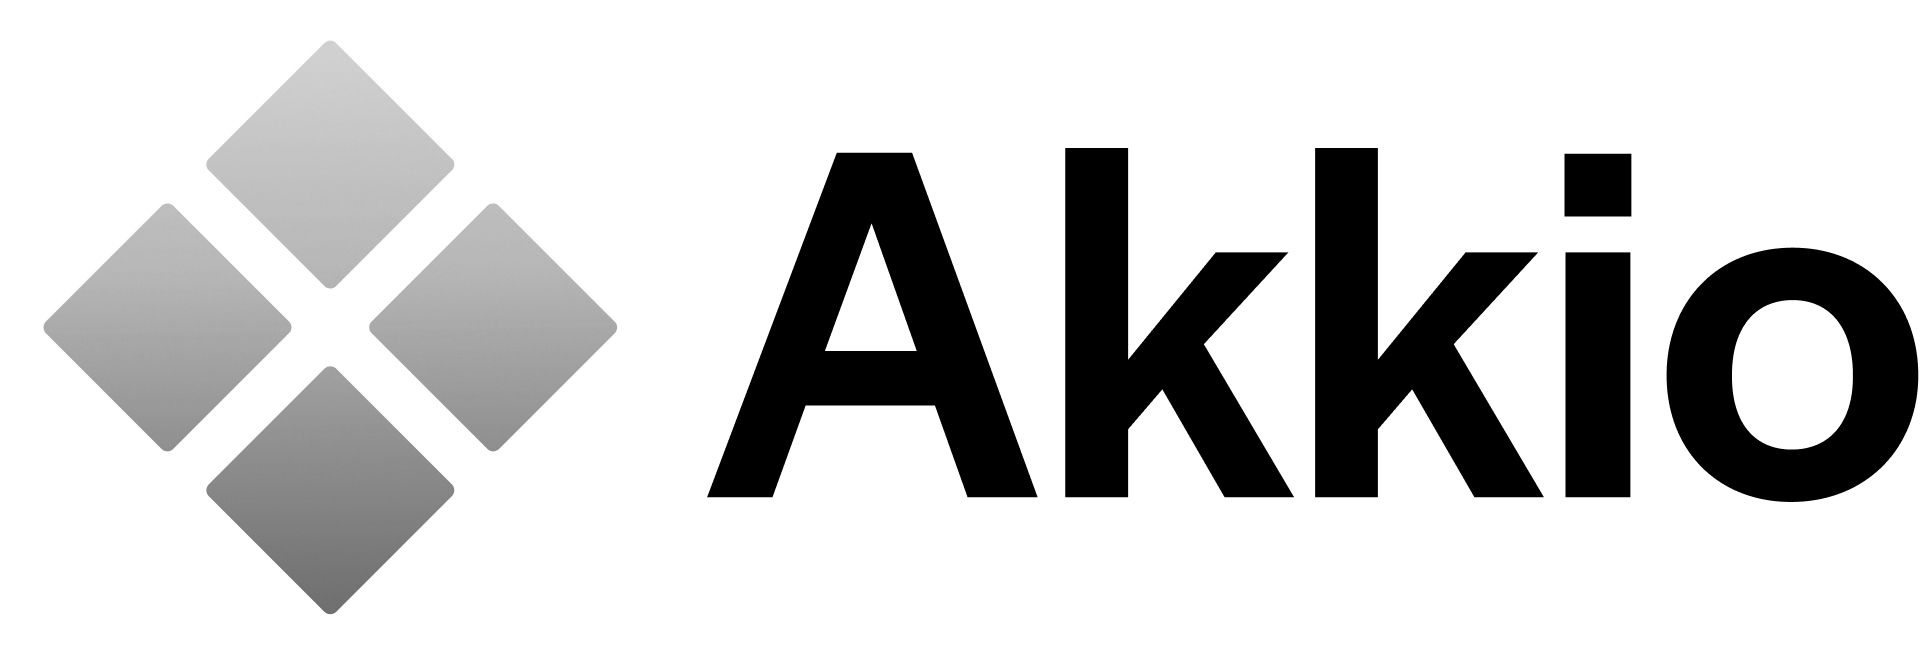 Akkio logo bw